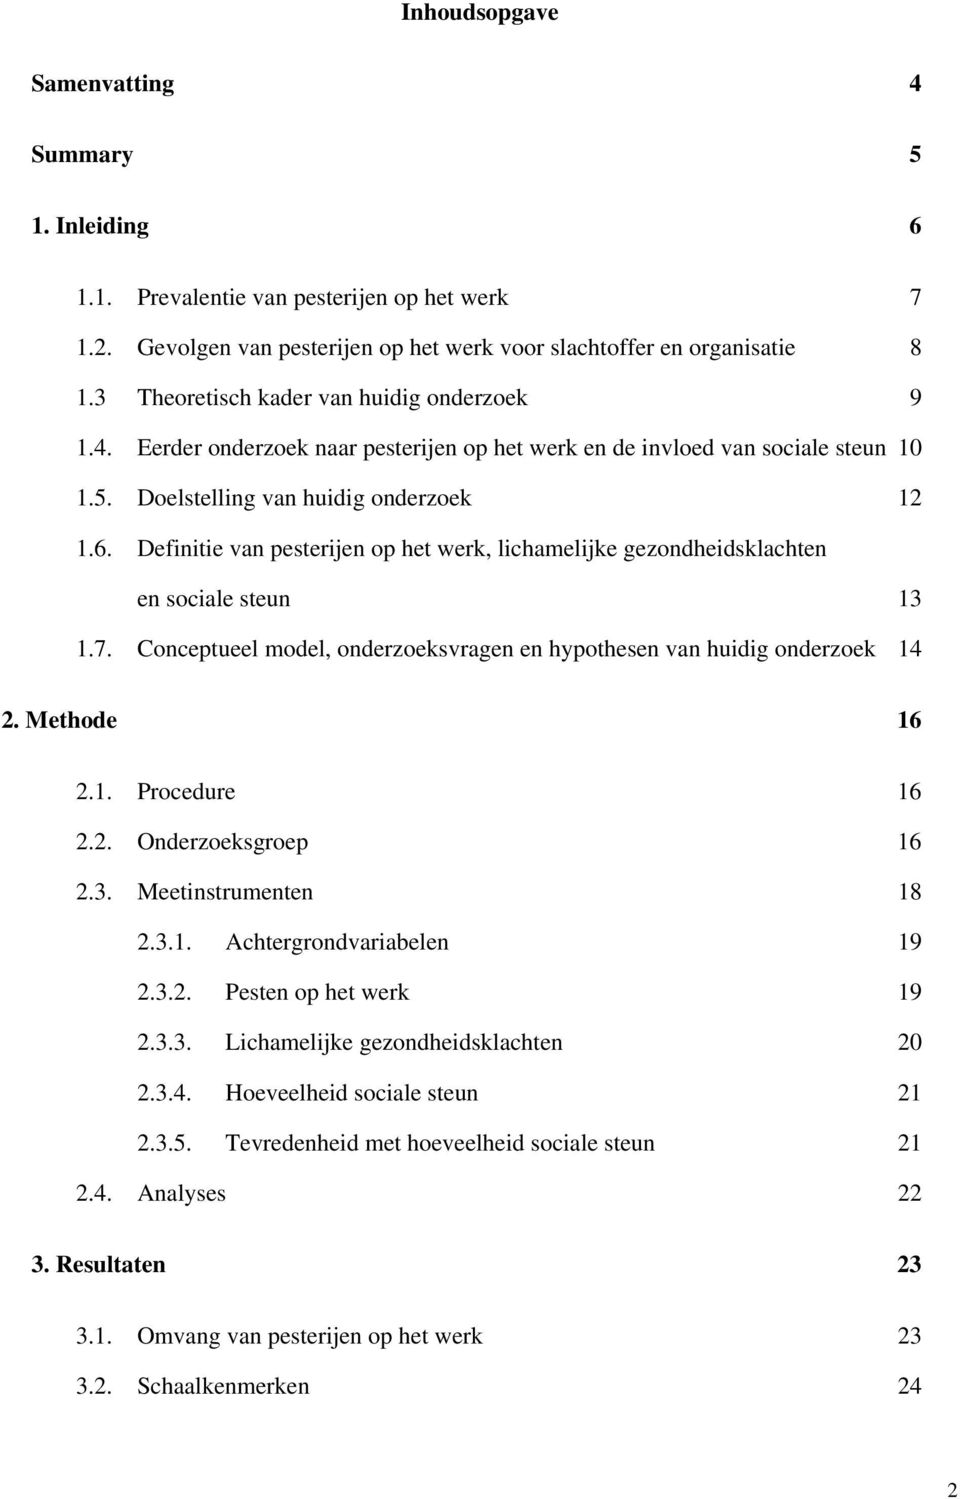 Definitie van pesterijen op het werk, lichamelijke gezondheidsklachten en sociale steun 13 1.7. Conceptueel model, onderzoeksvragen en hypothesen van huidig onderzoek 14 2. Methode 16 2.1. Procedure 16 2.